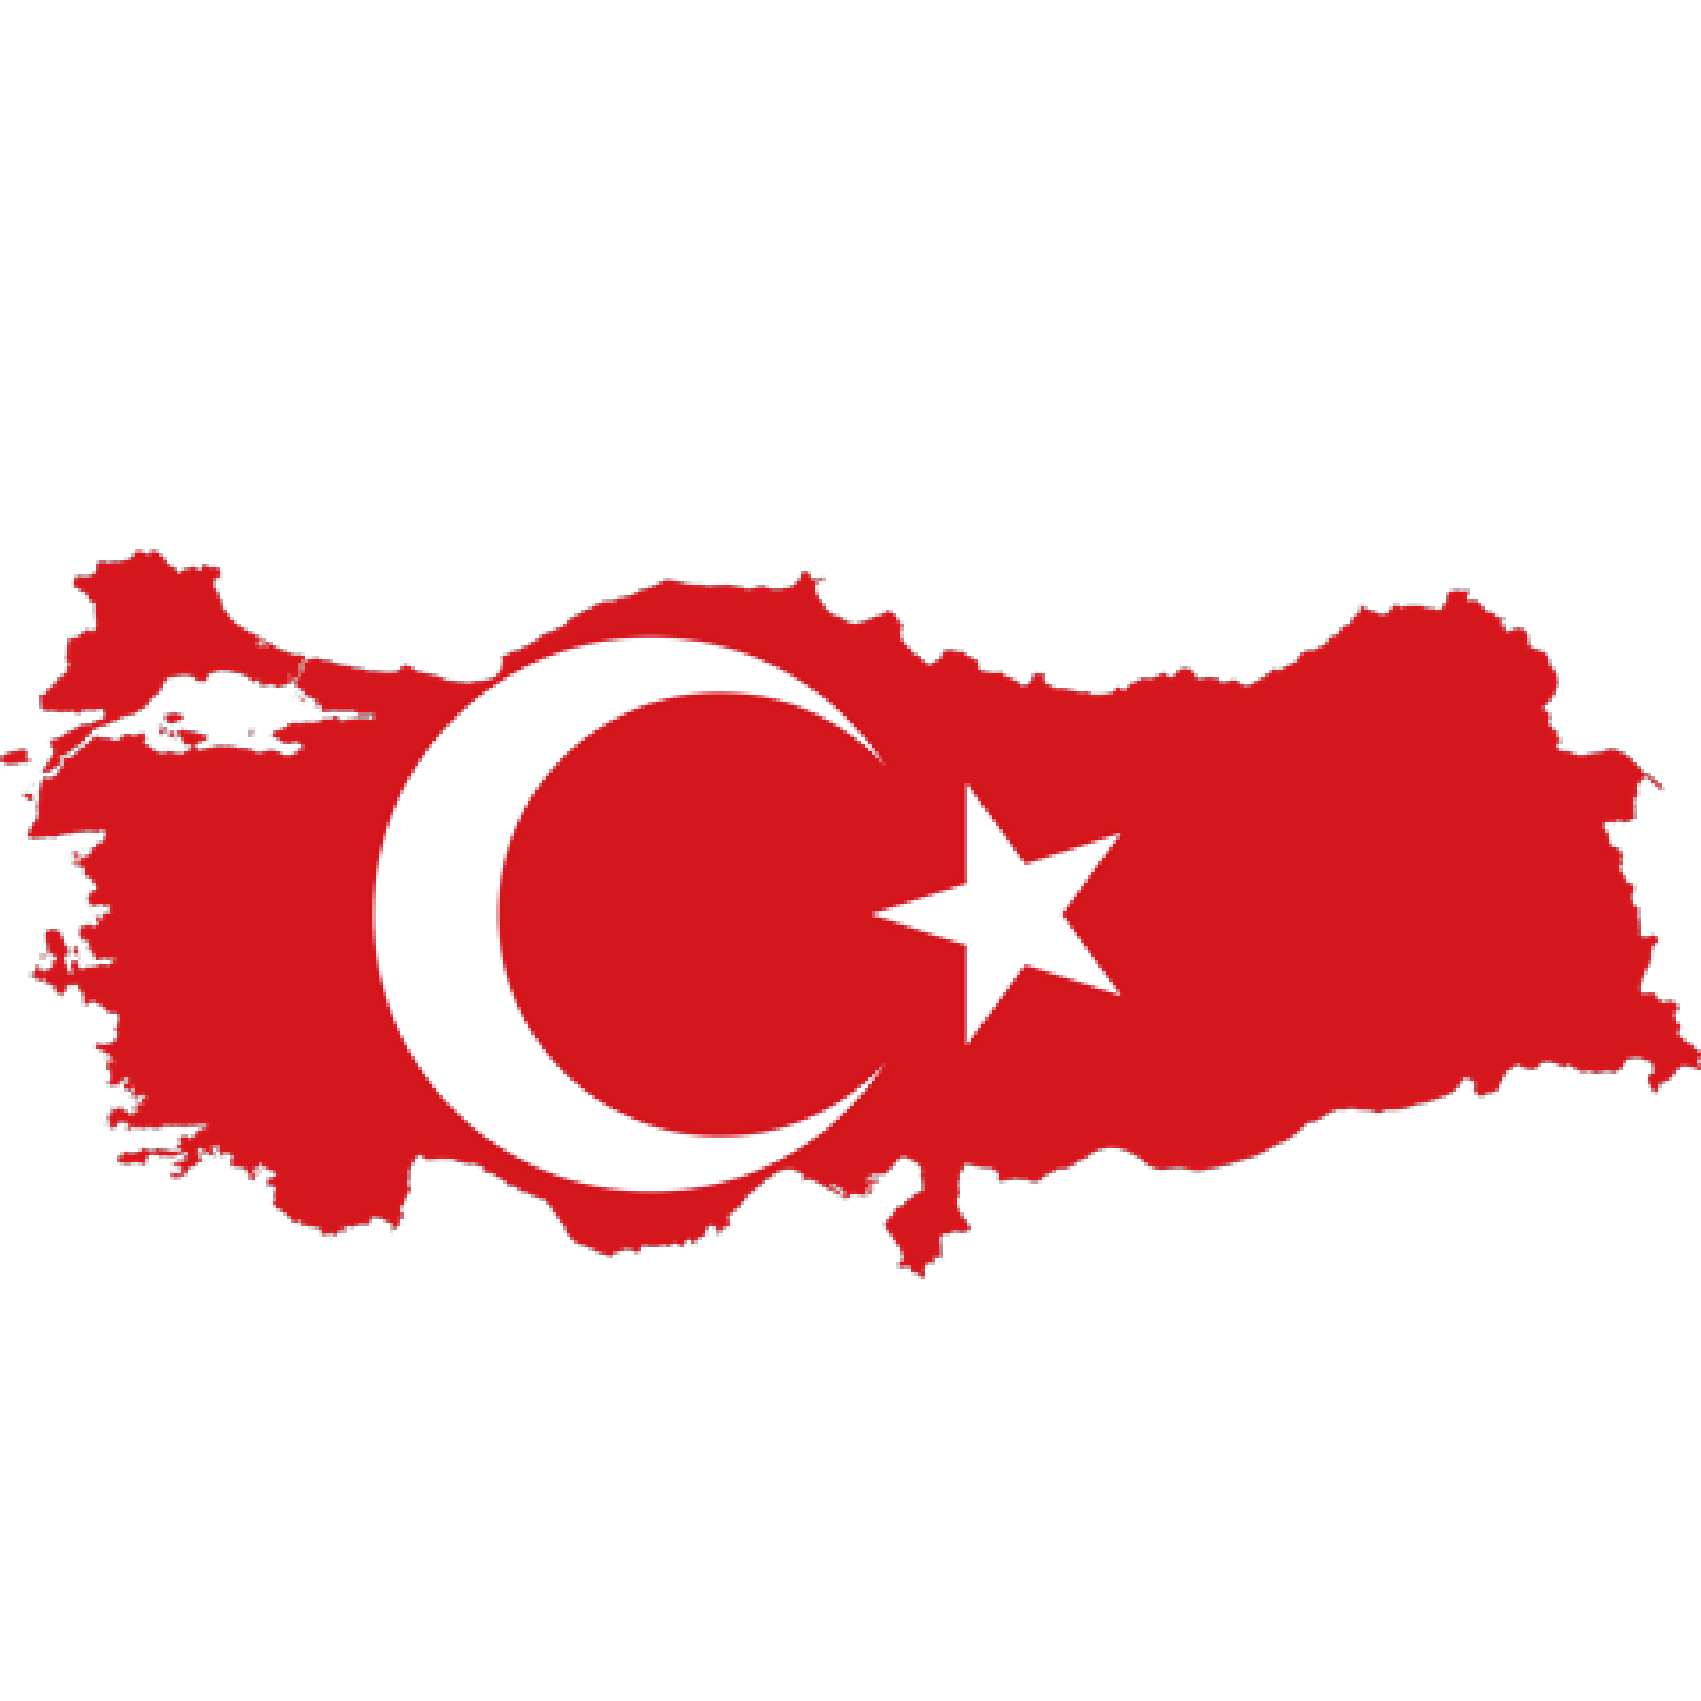 Flag of Turkey, the partner of barskorea.